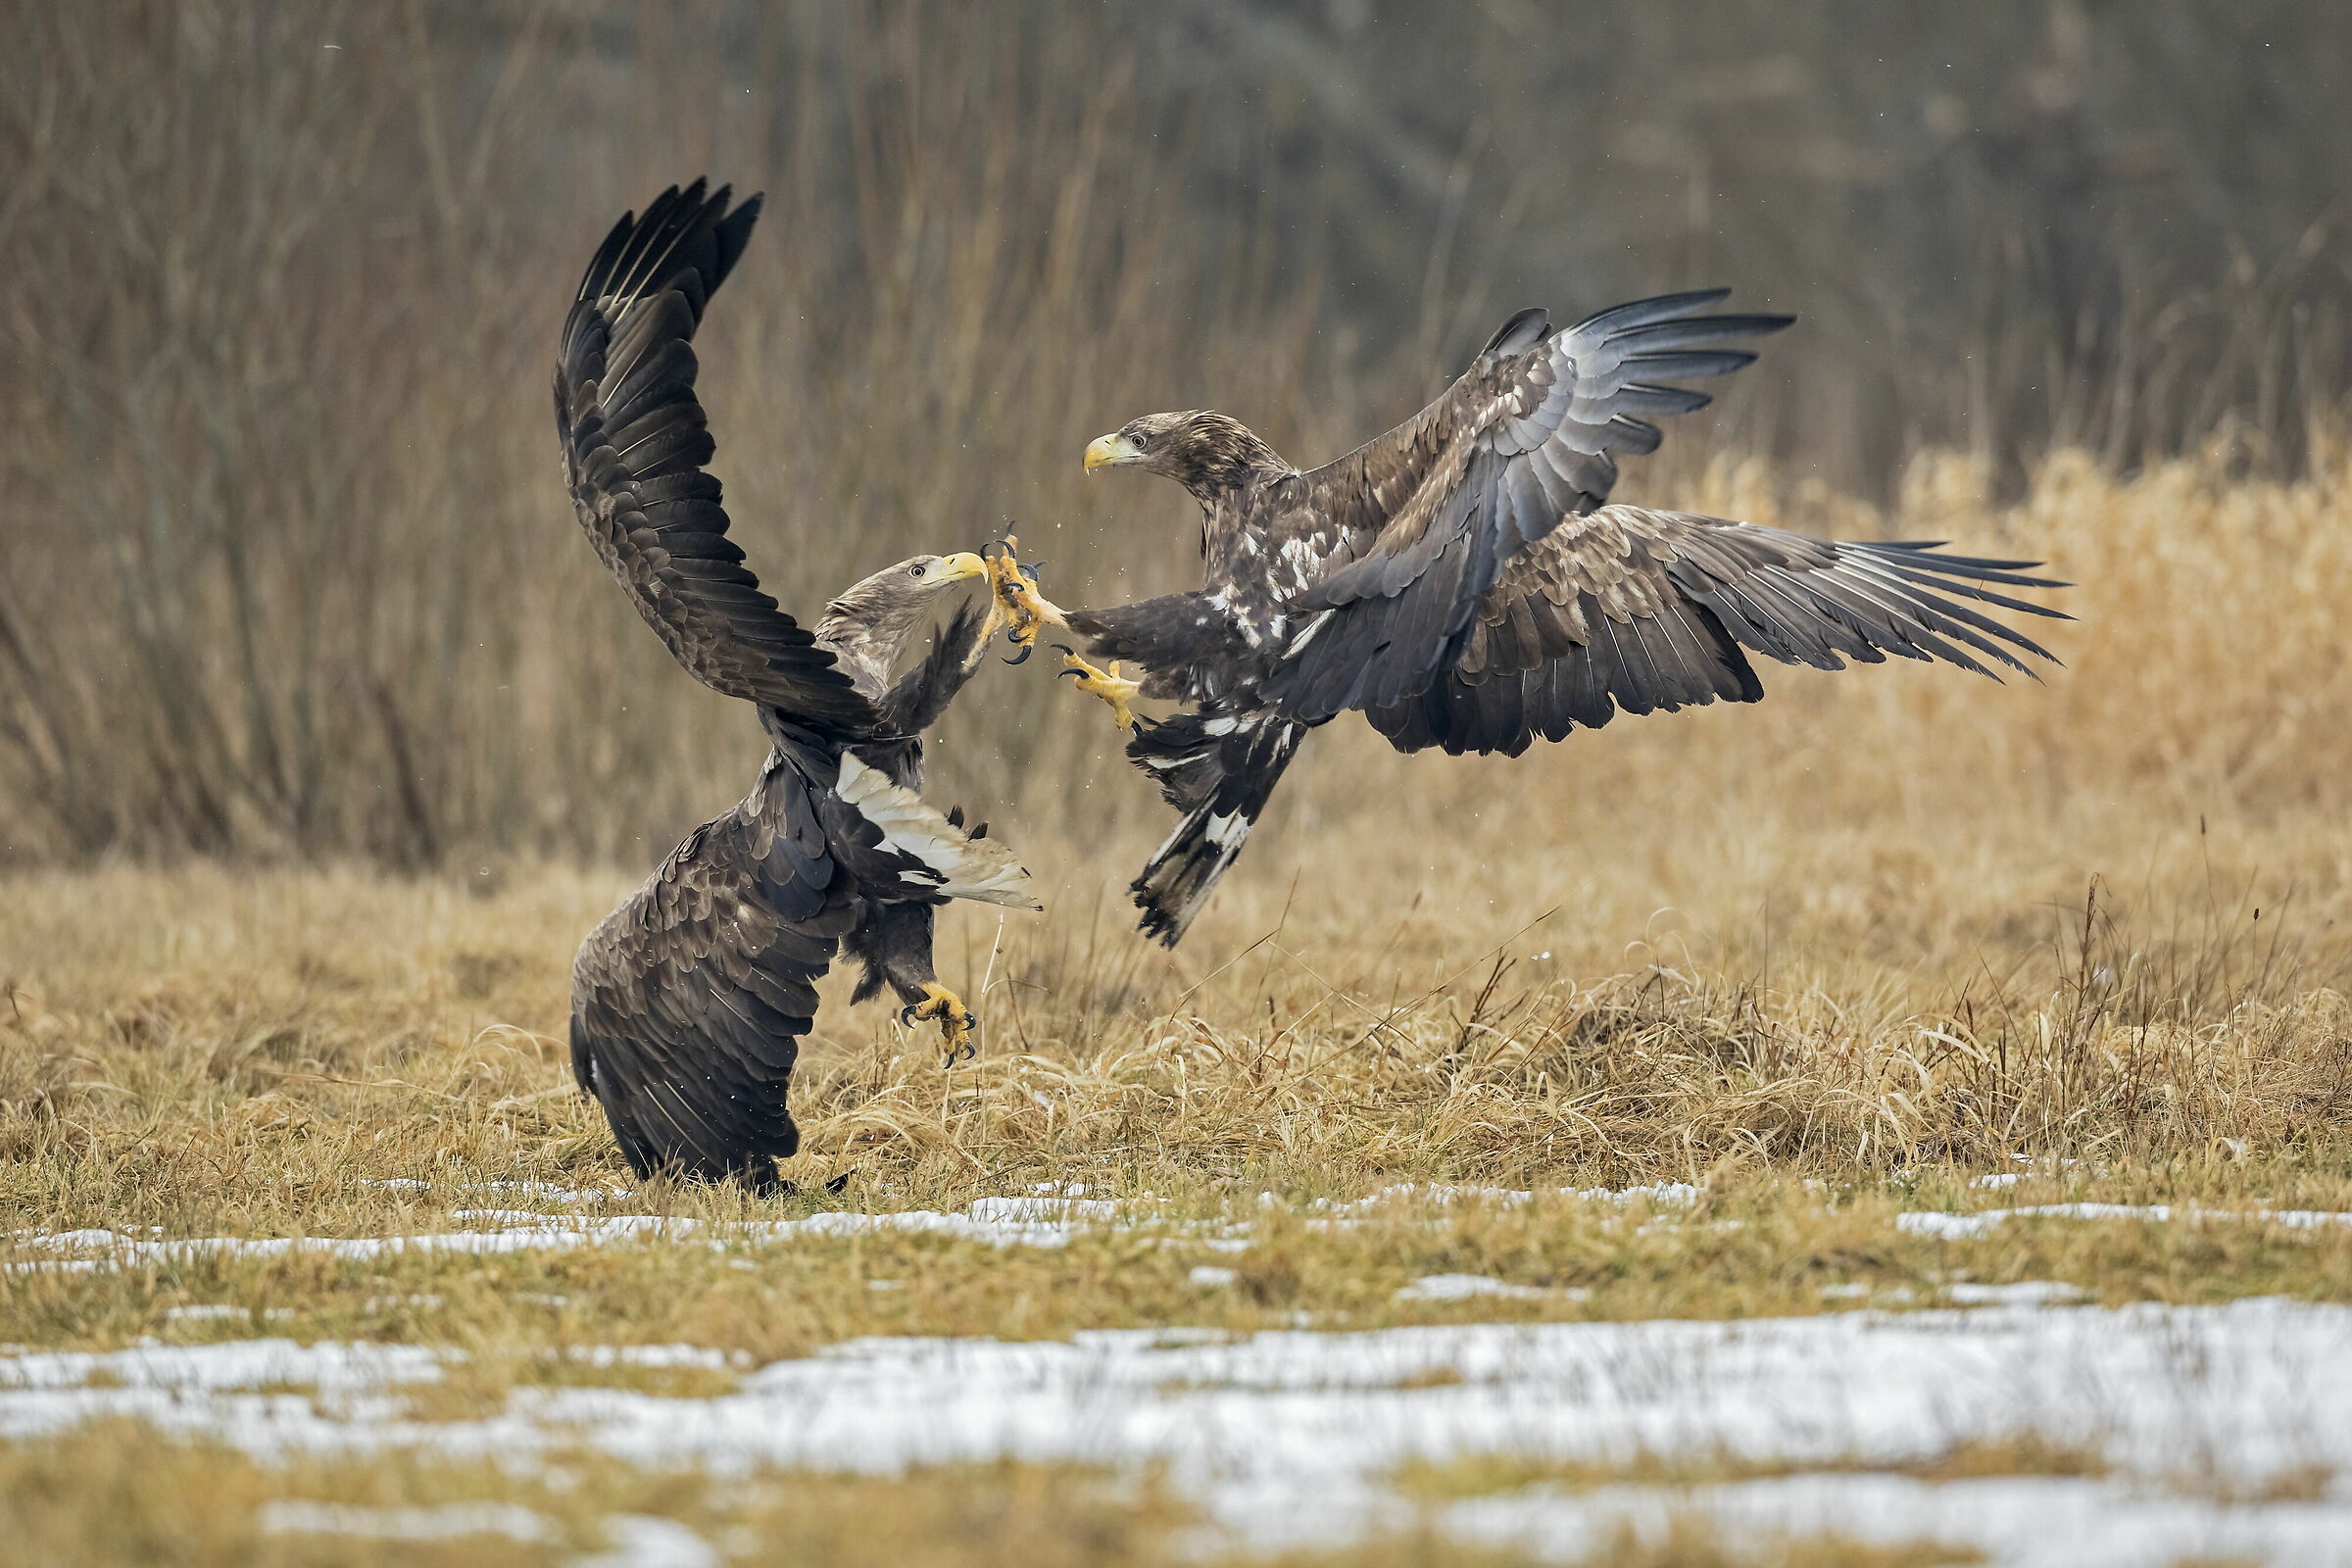 eagles in combat...